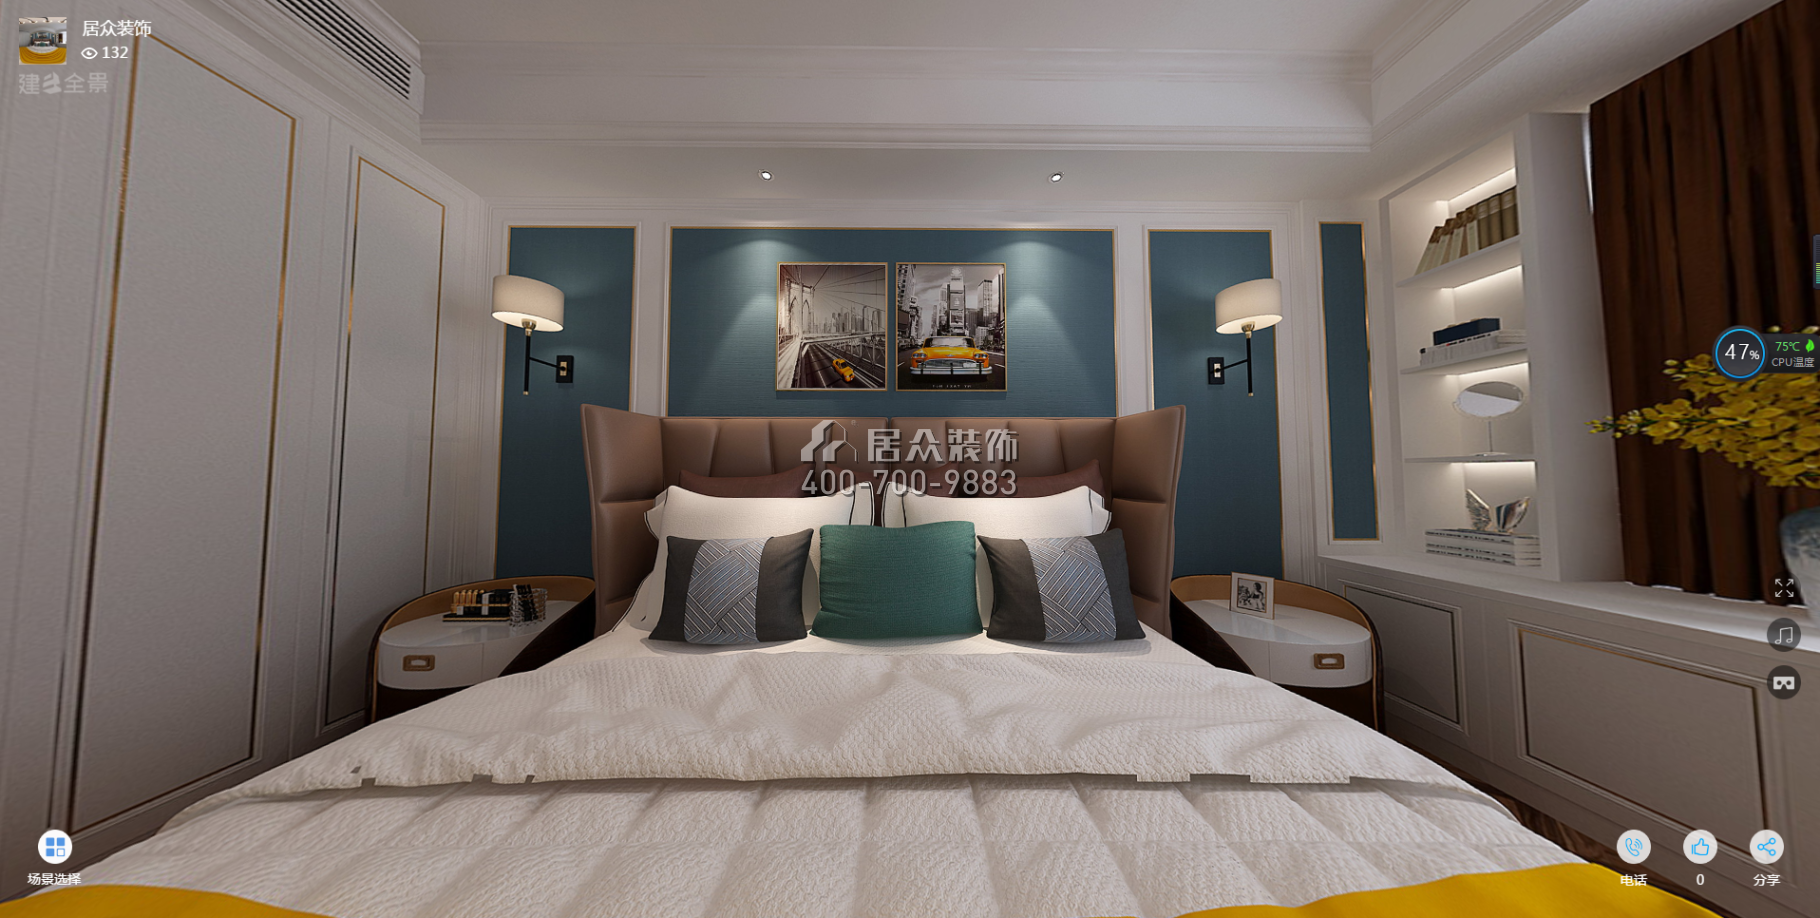 三一翡翠湾156平方米美式风格平层户型卧室装修效果图